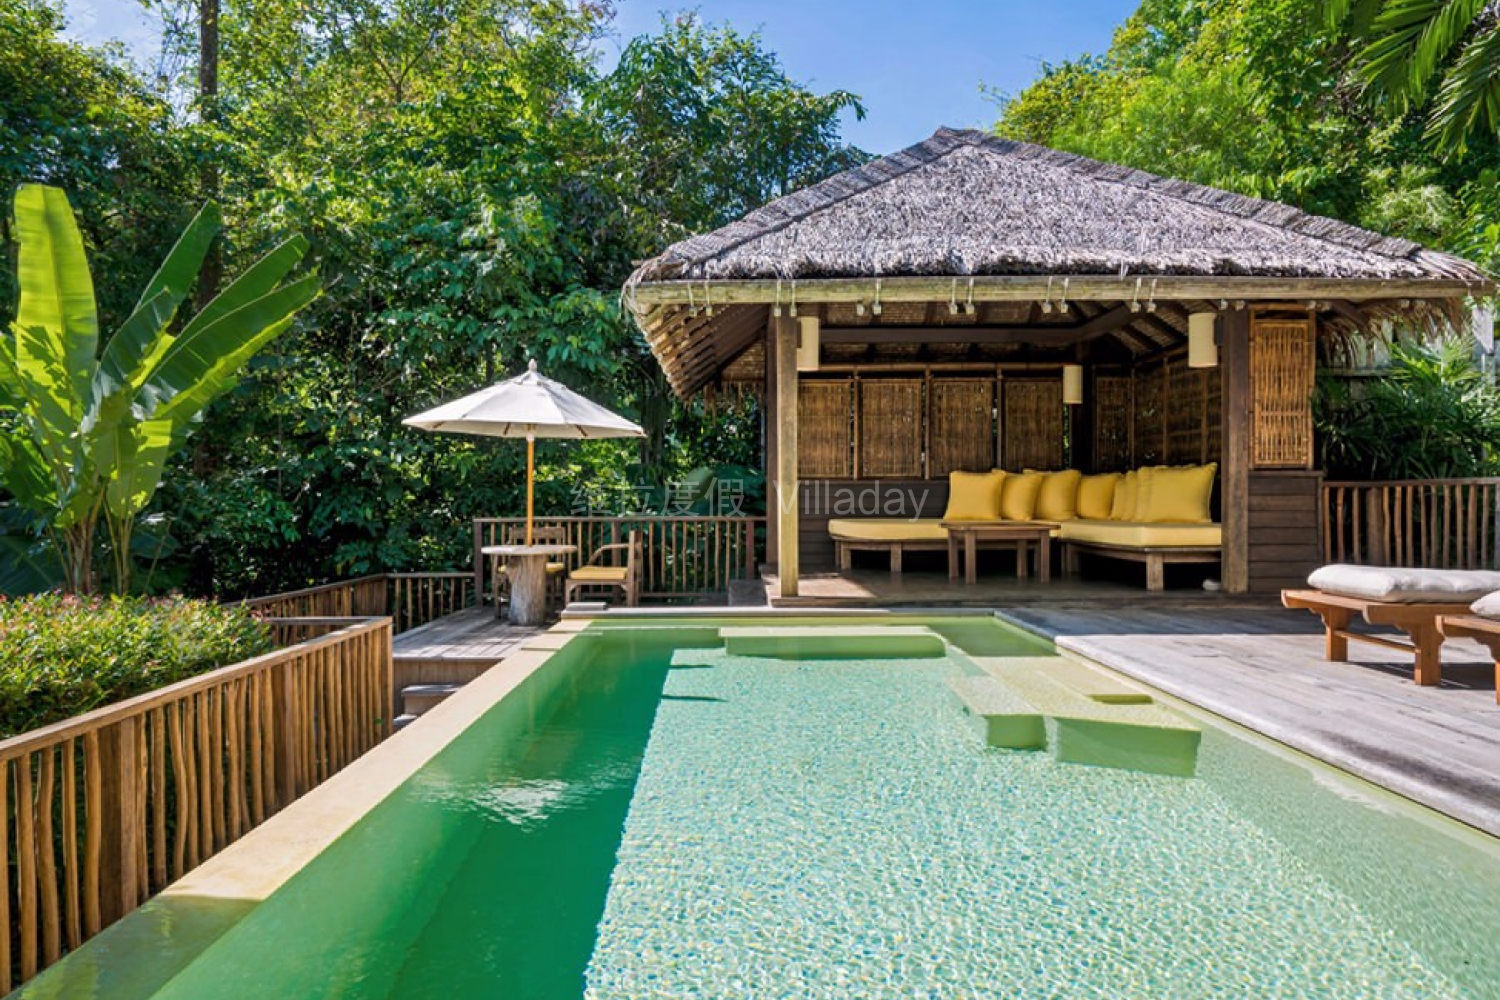 普吉岛奥瑞格拉古娜别墅度假酒店Outrigger Laguna Phuket Resort and Villas – 爱岛人 海岛旅行专家